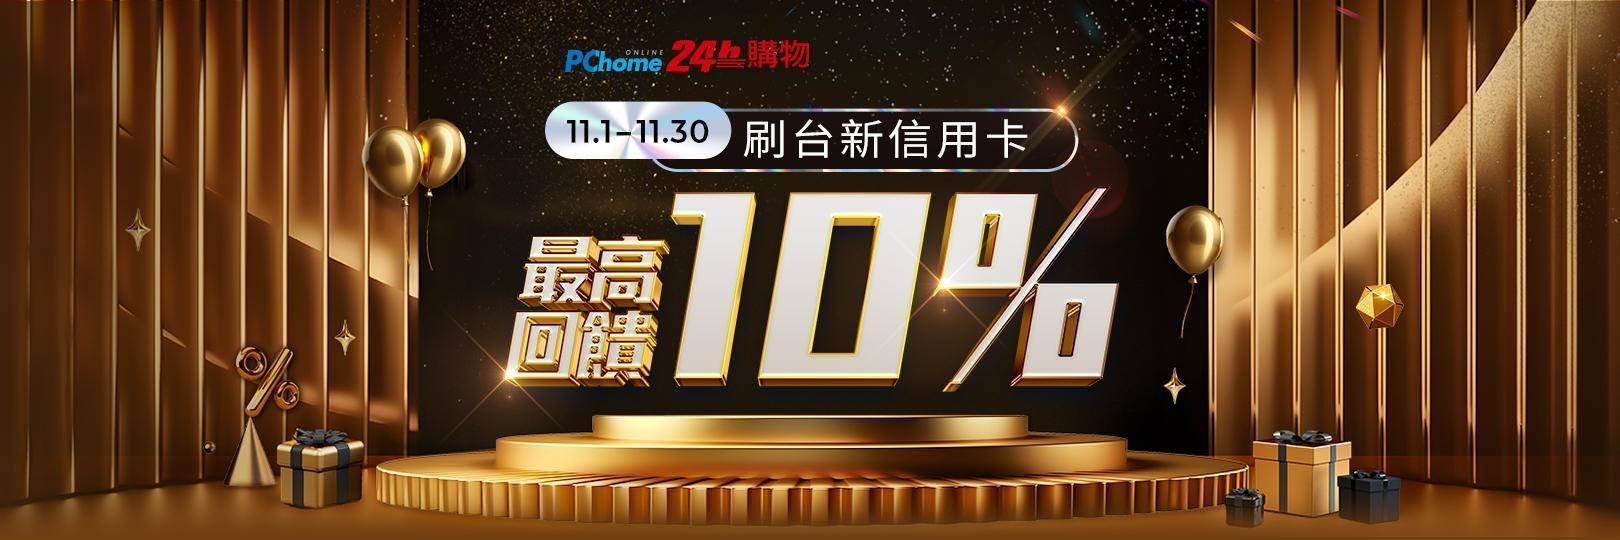 PChome雙11 刷台新最高回饋10%